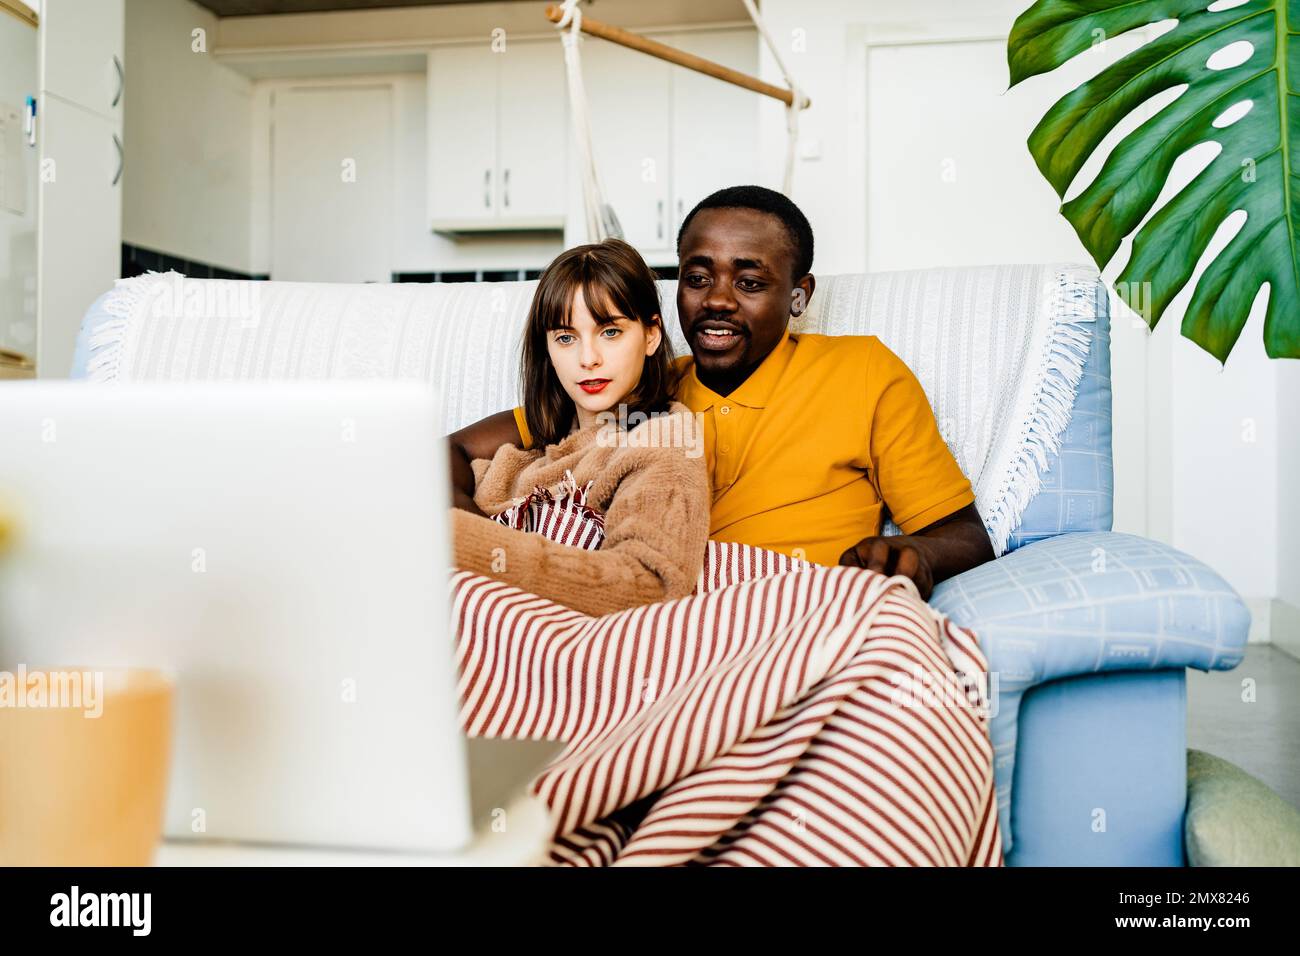 Jeune couple multiracial dans des vêtements décontractés assis sur un canapé et parcourant un ordinateur portable tout en passant du temps libre à la maison Banque D'Images